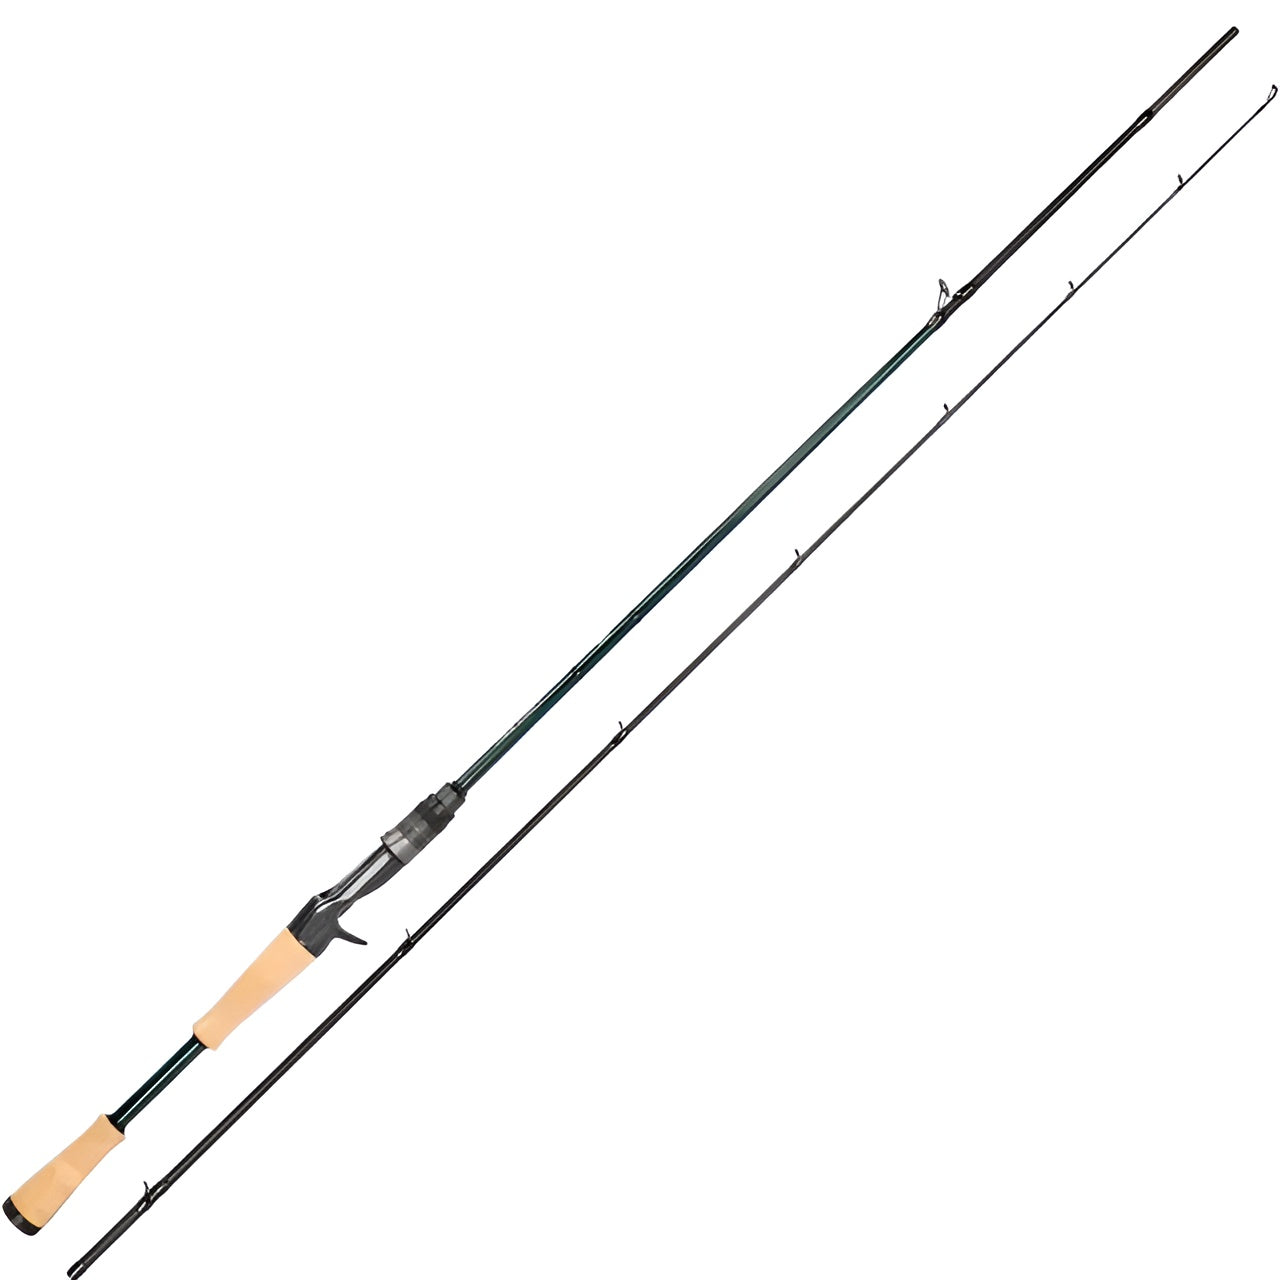 TSURINOYA PROFLEX Ⅲ Ultralight Spinning Baitcasting Fishing Rod